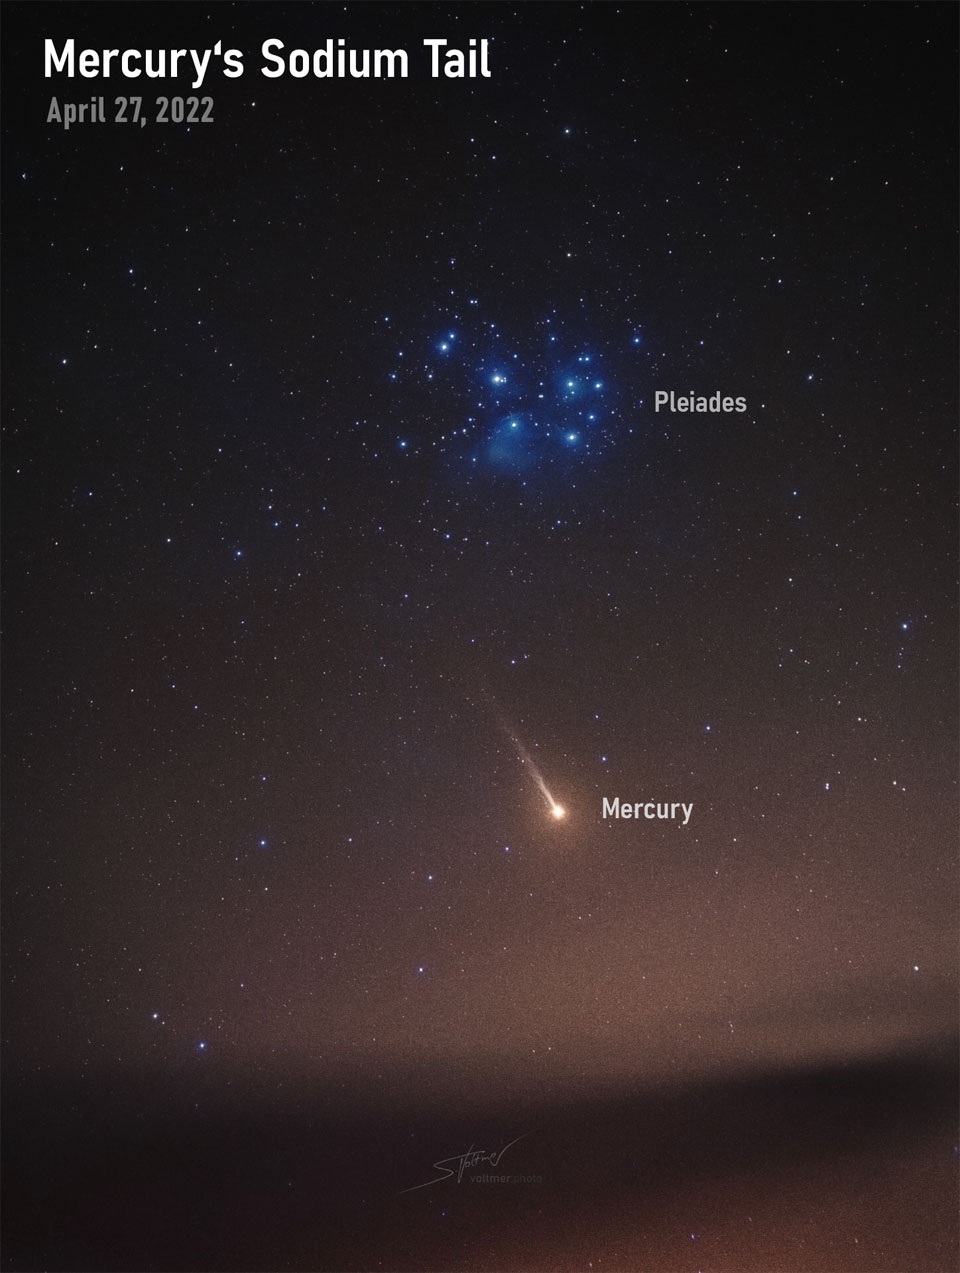 Opisywane zdjęcie pokazuje planetę Merkury pod gromadą otwartą gwiazd Plejady.
Zaskakująco Merkury wygląda jak kometa, popisując się długim warkoczem jonowym złożonym
z sodu. Zdjęcie wykonano 27 kwietnia 2022 r. Zobacz opis. Kliknięcie wyświetli obraz
 o największej dostępnej rozdzielczości.